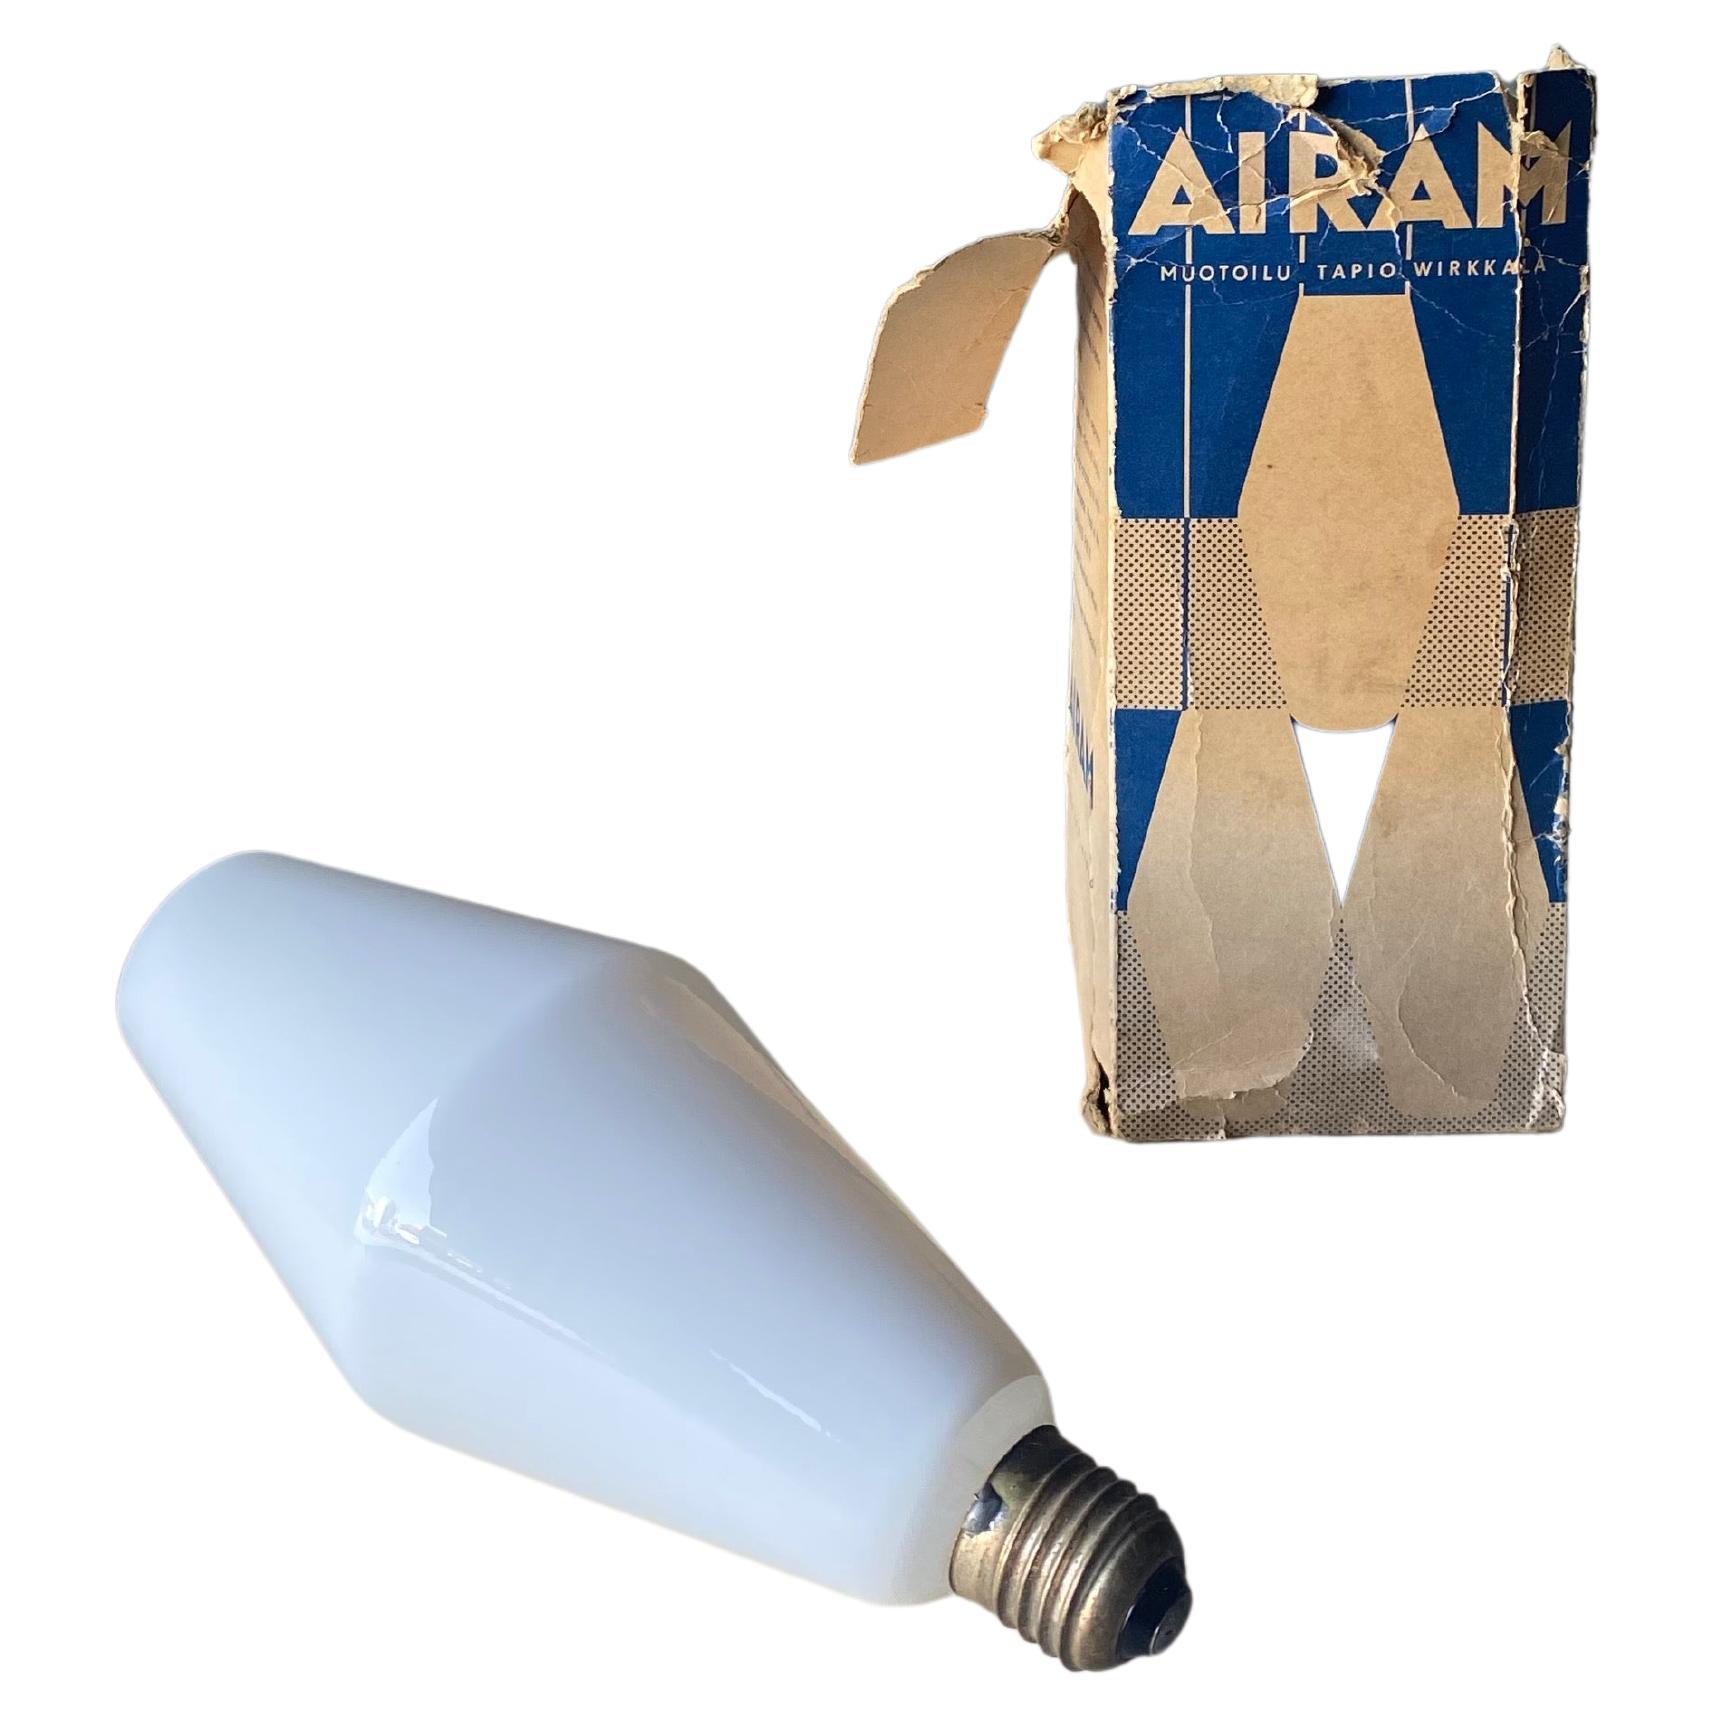 Oy Airam Ab, LIghtbulb By Tapio Wirkkala, 1960